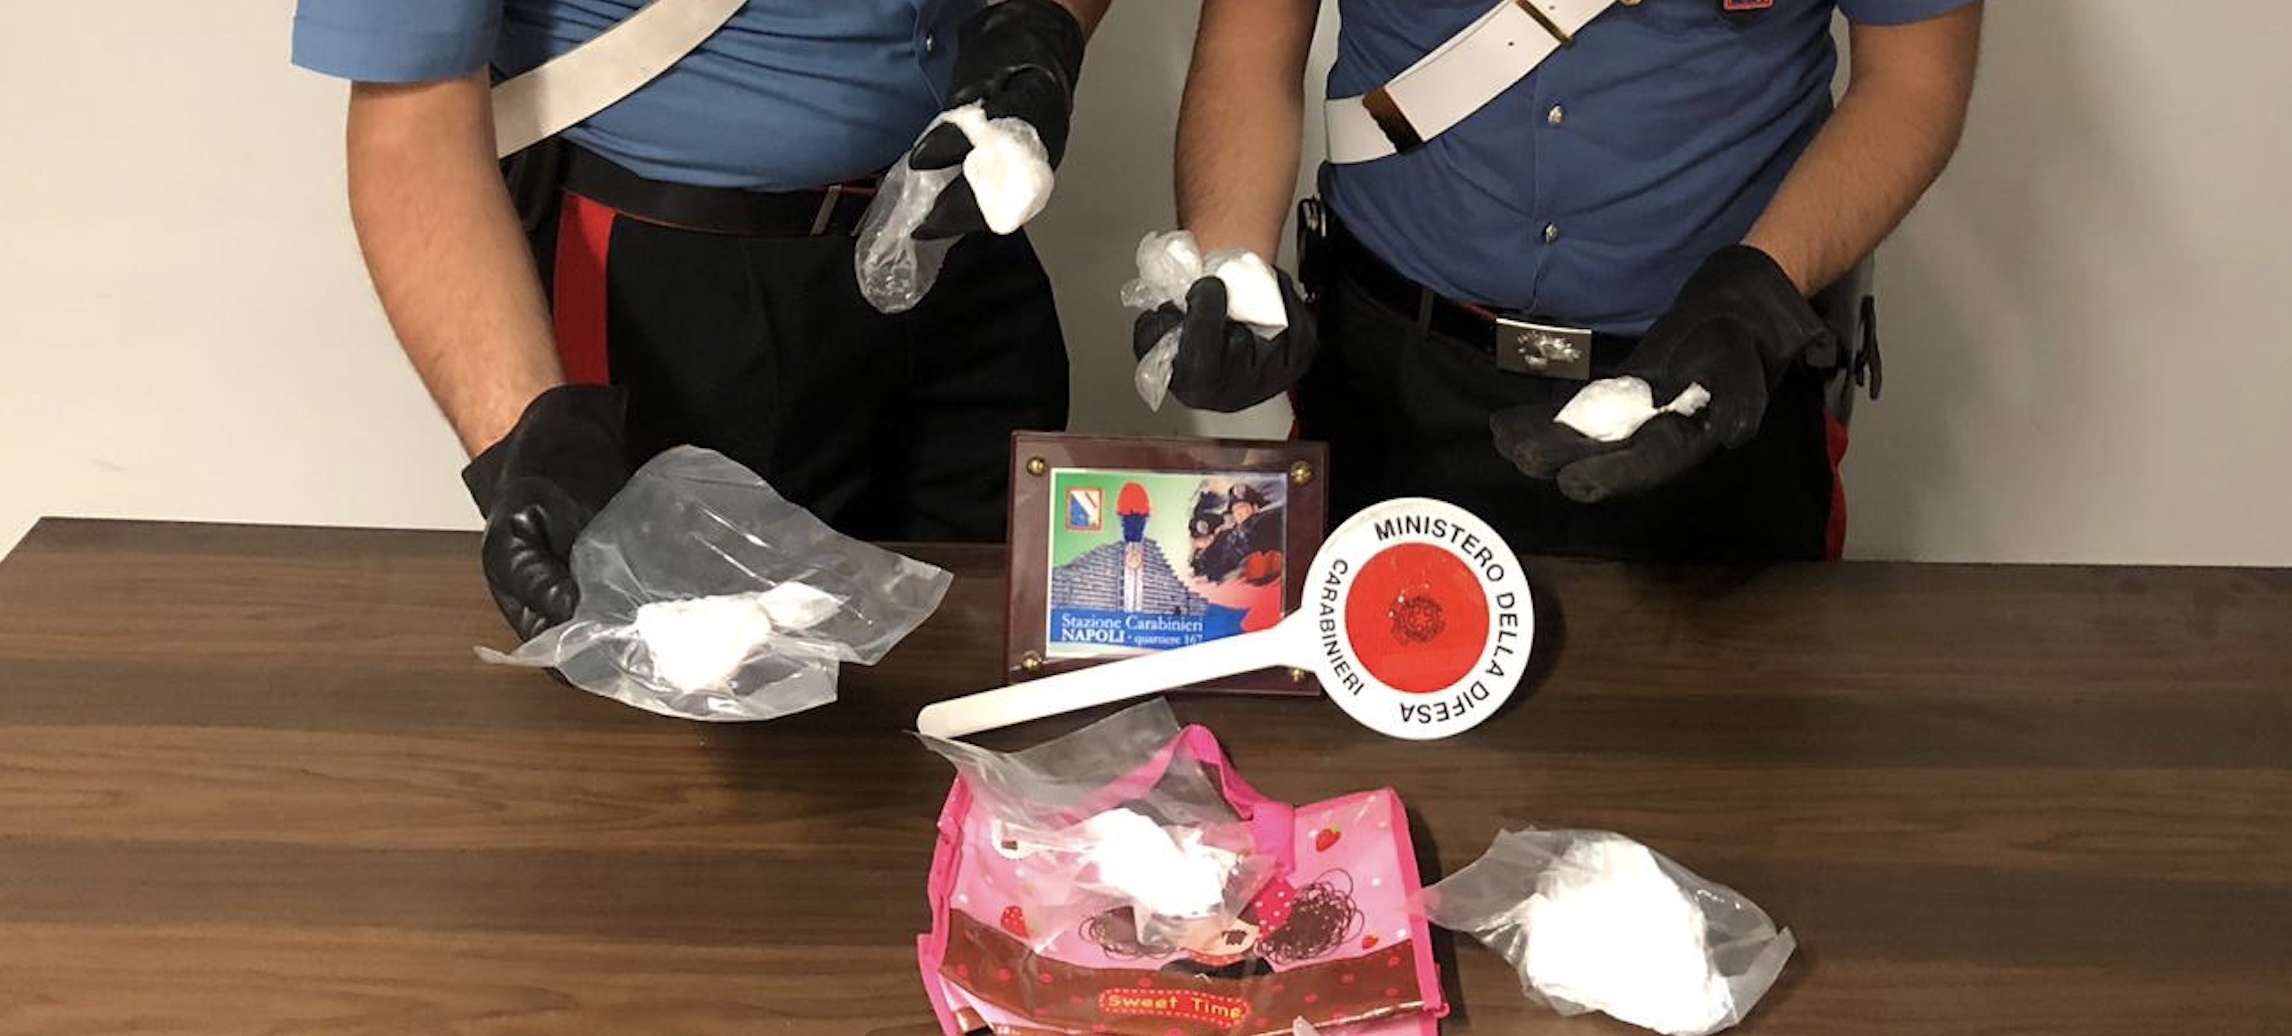 Napoli: 430 grammi di cocaina purissima sequestrata dai carabinieri